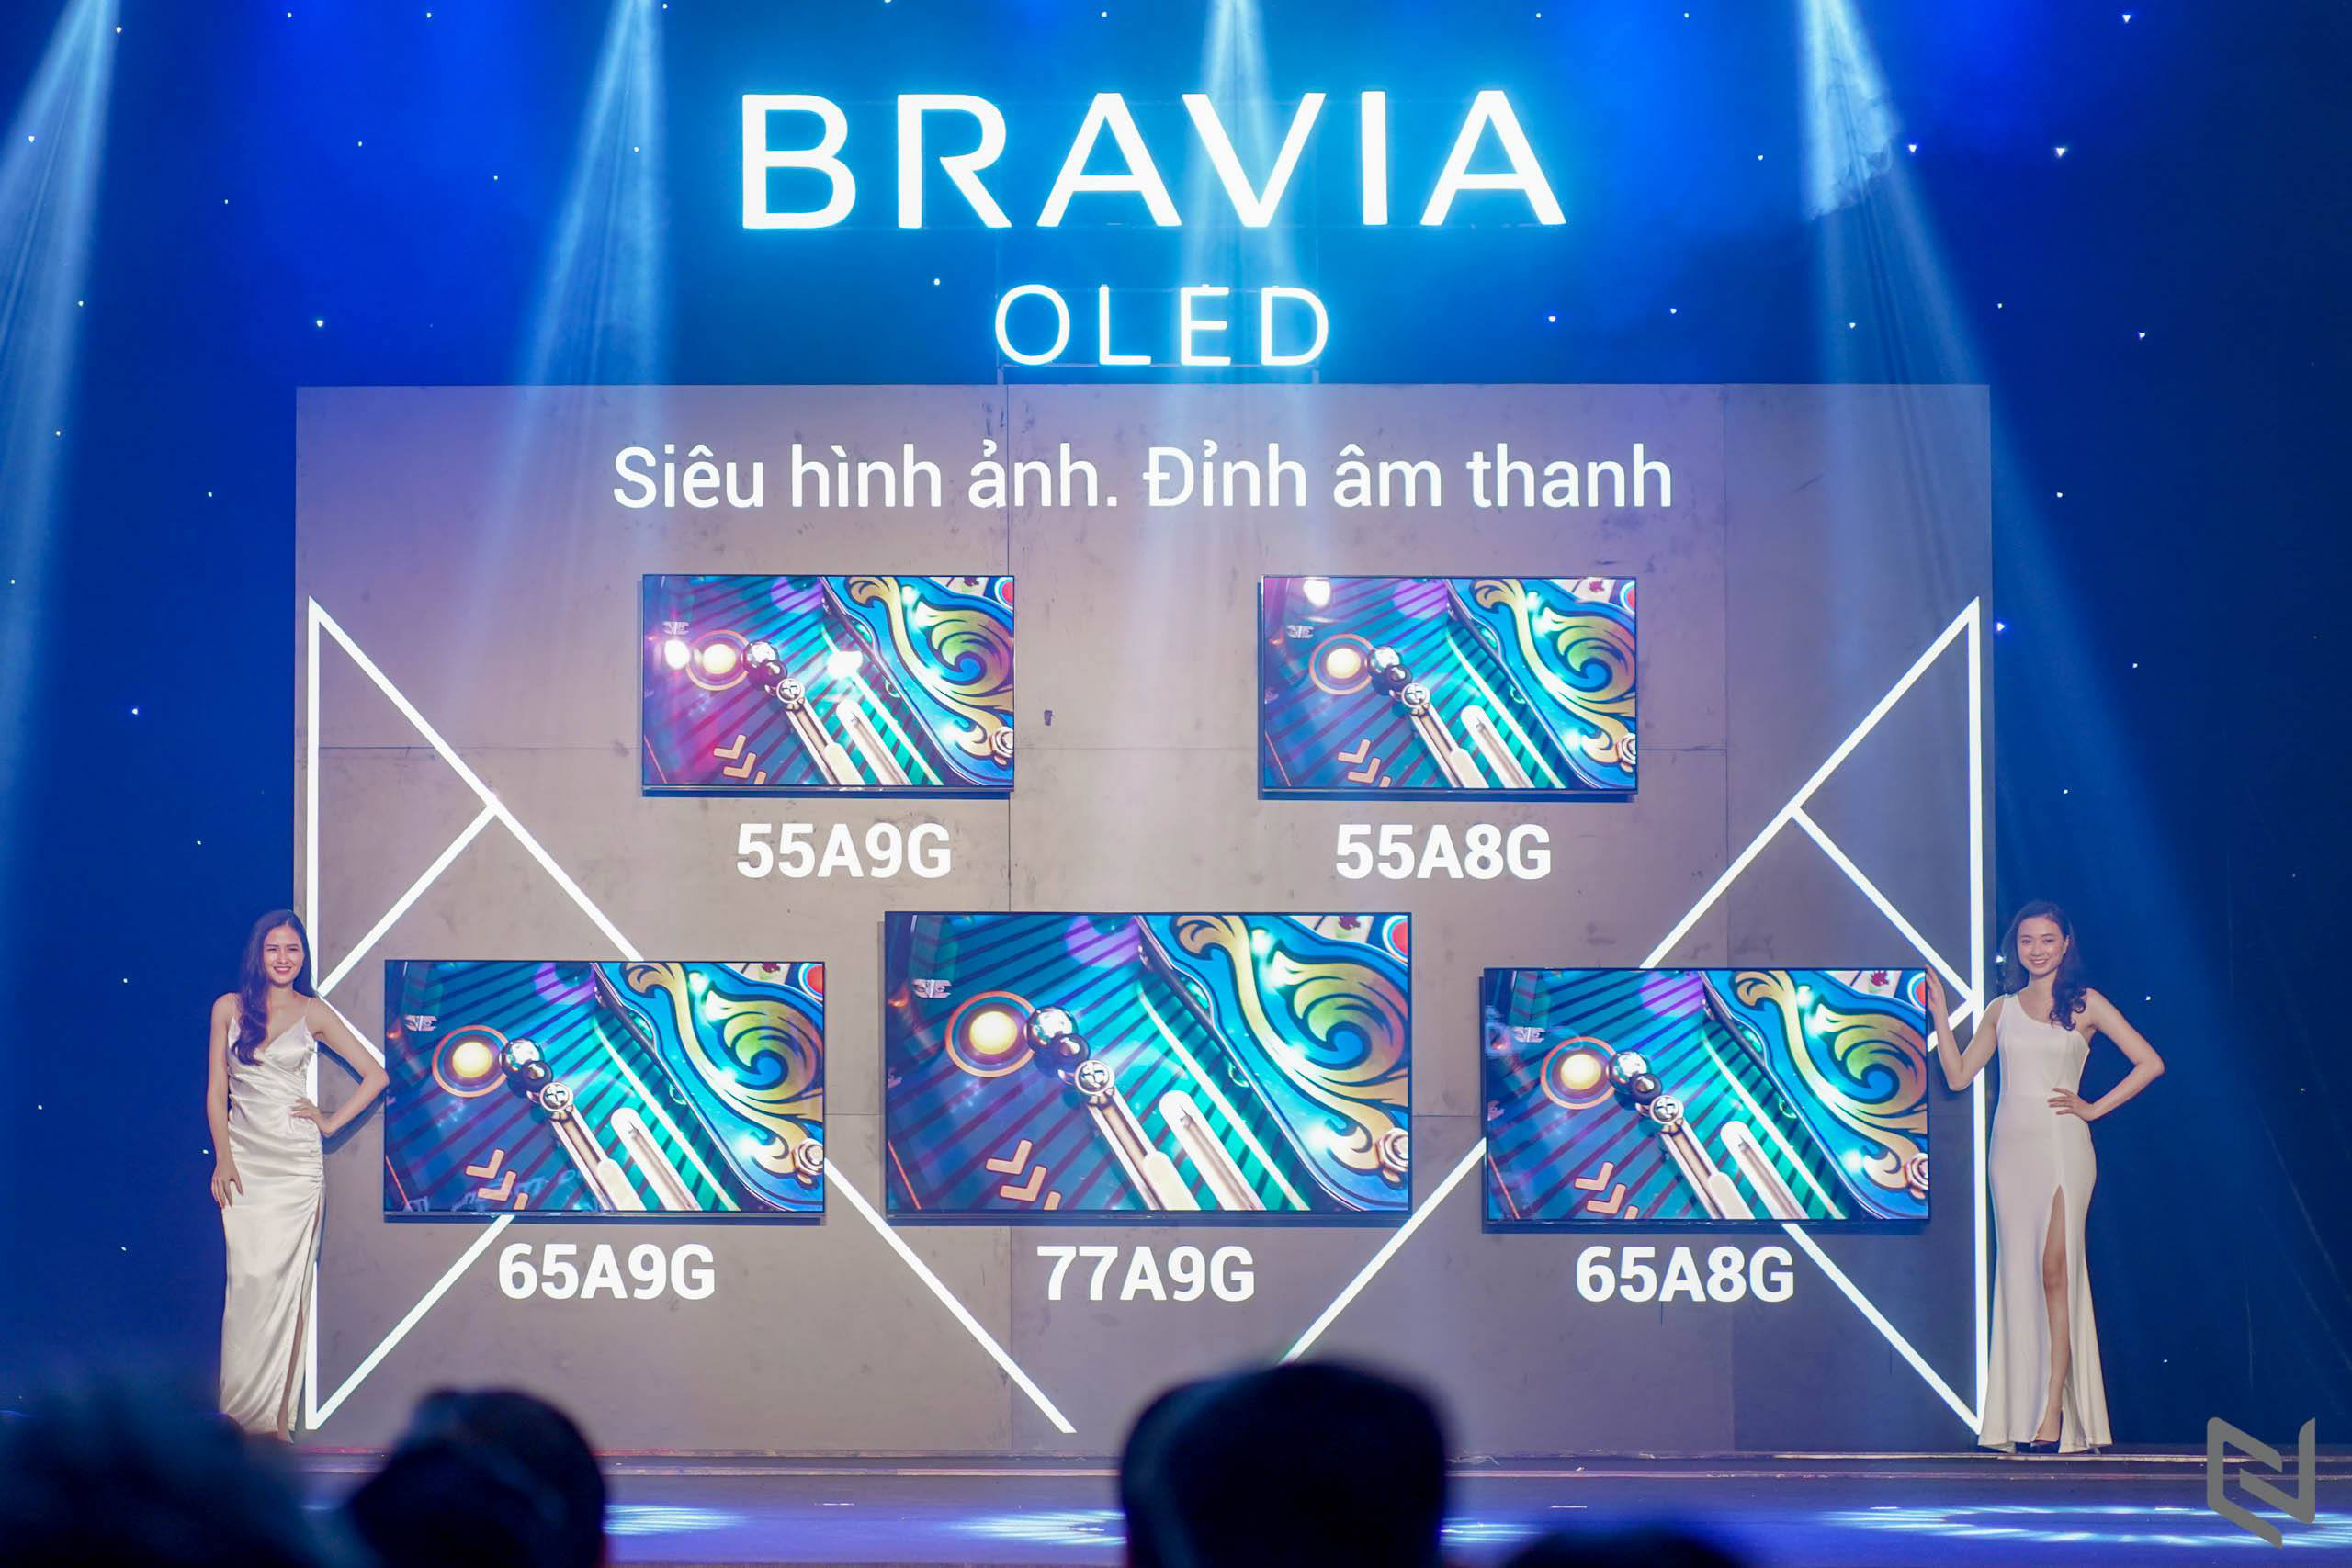 Điểm mặt những mẫu TV đình đám của dòng sản phẩm Bravia 2019